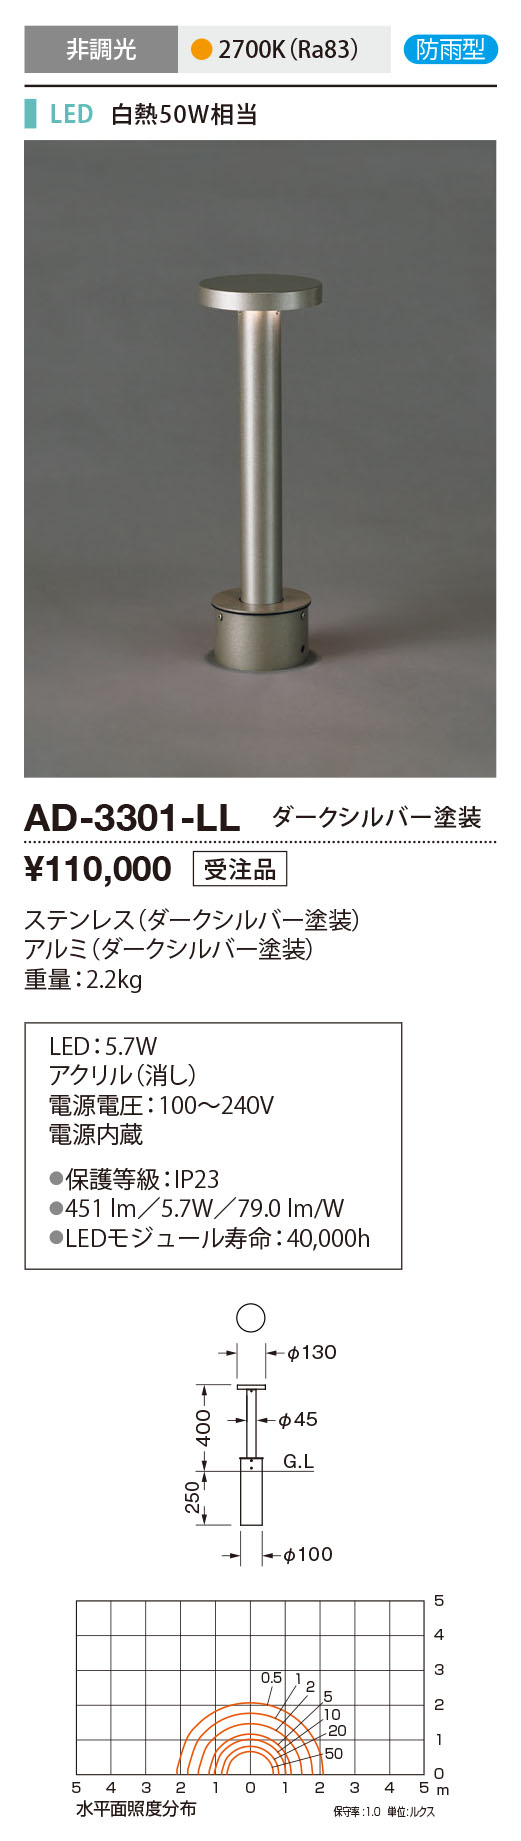 AD-3301-LL